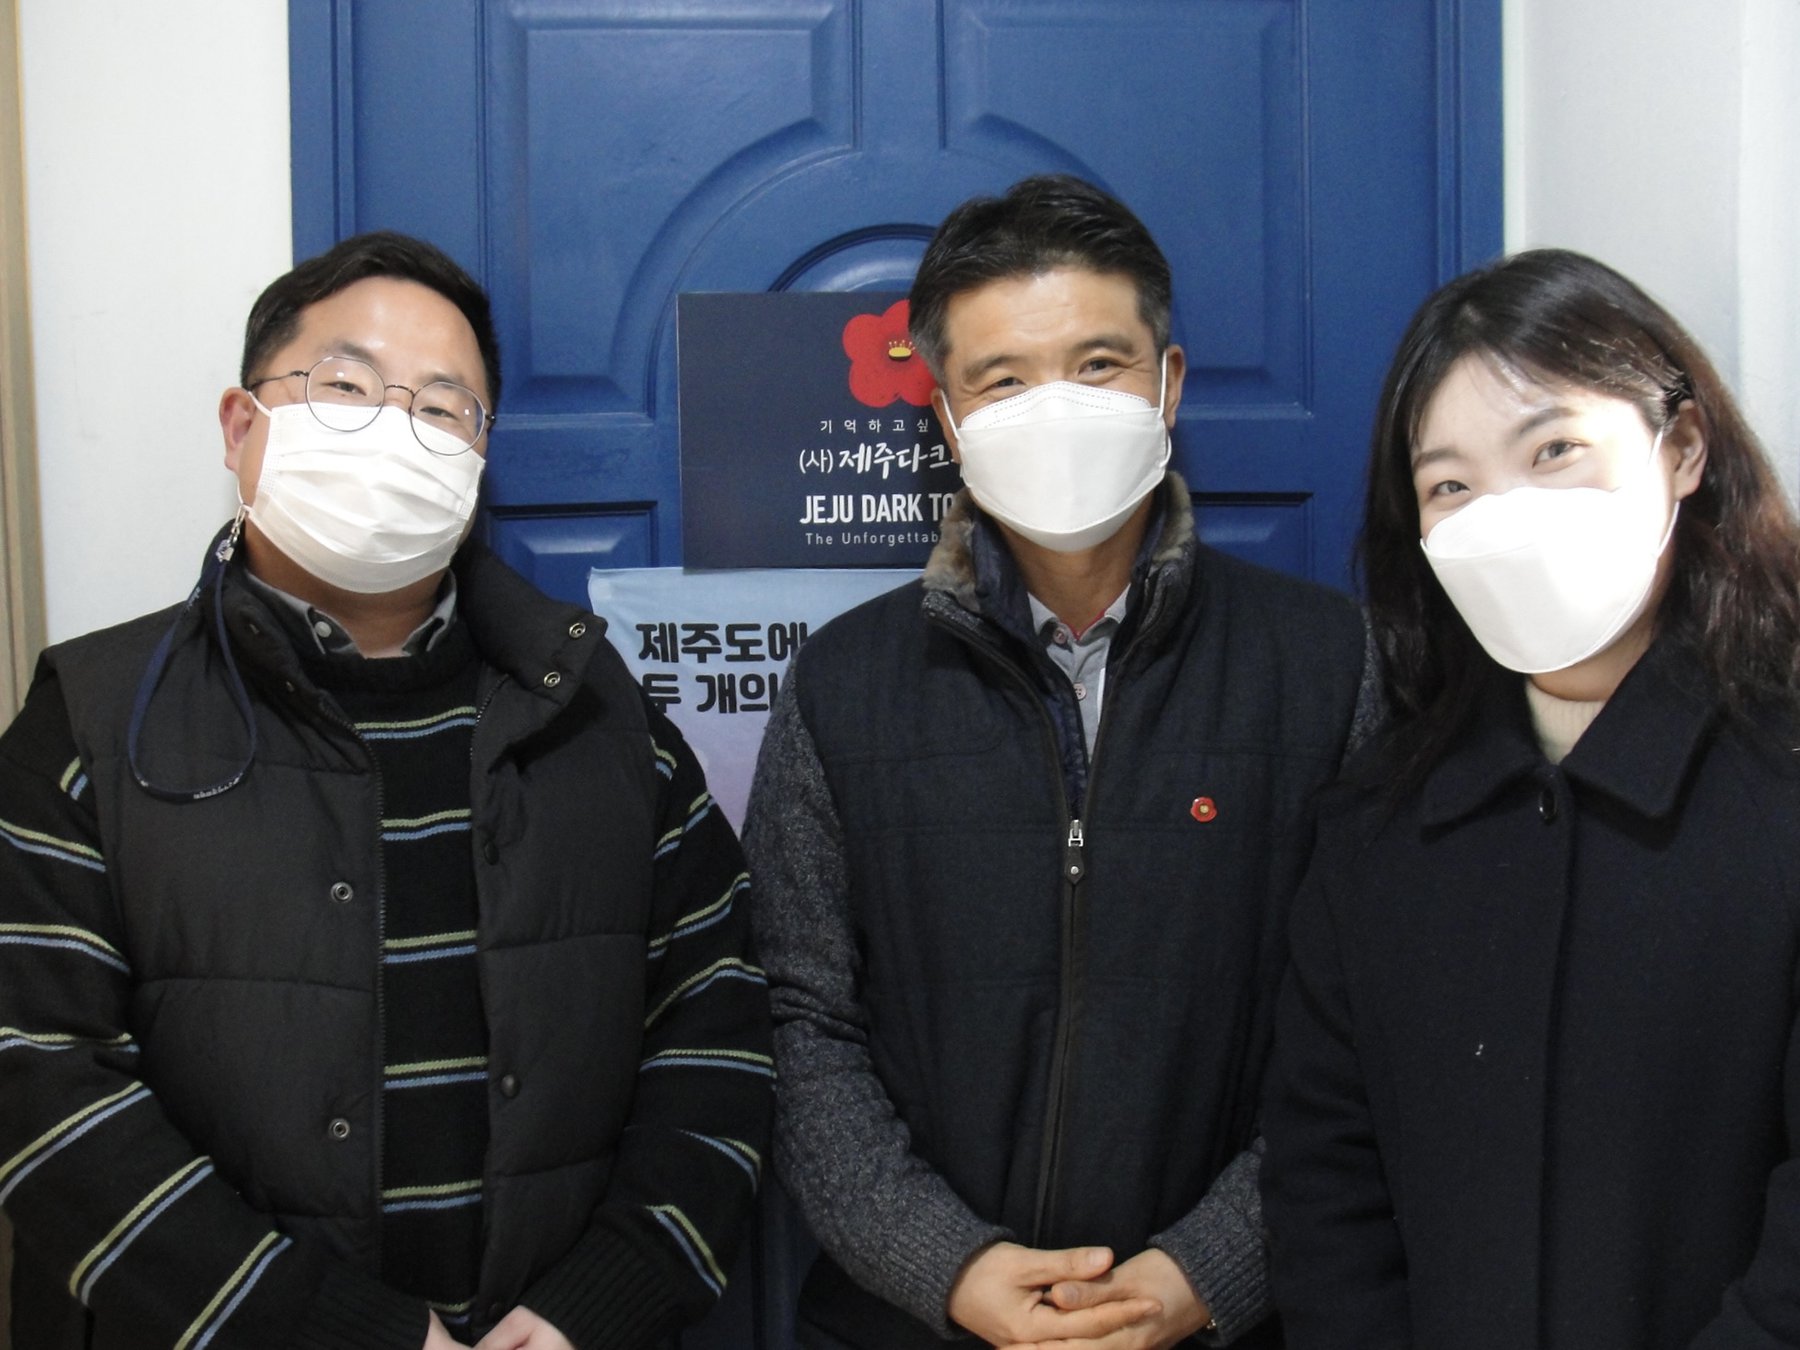 제주다크투어 사무실 앞에서 대표님과 저희의 모습을 김복기 선생님께서 담아주셨습니다 :)